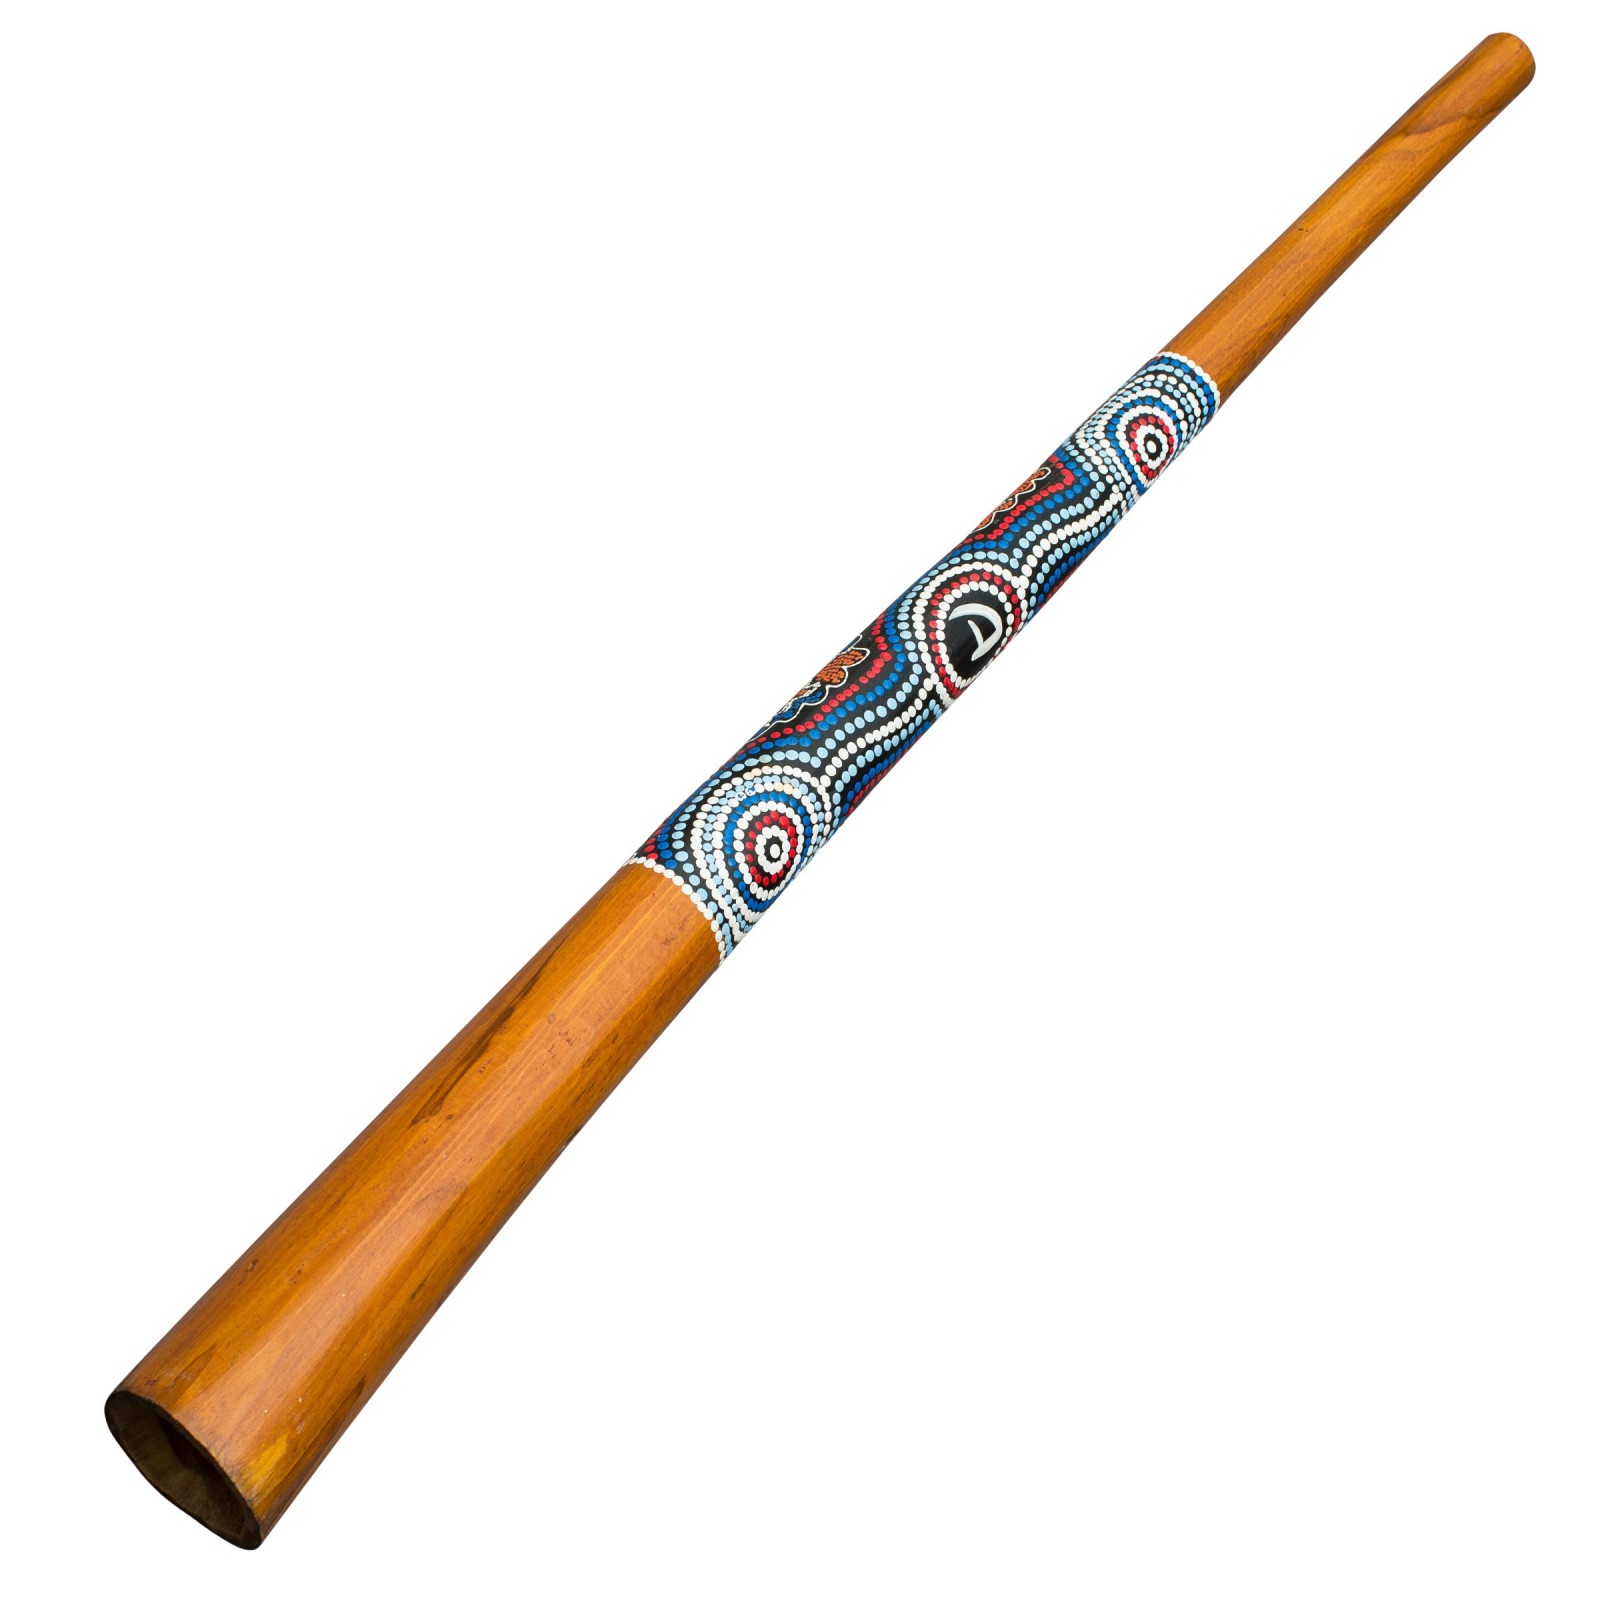 Didgeridoo Wood 130cm Didgeridoo With Aboriginalpaintings Didgeridoo For Beginner 